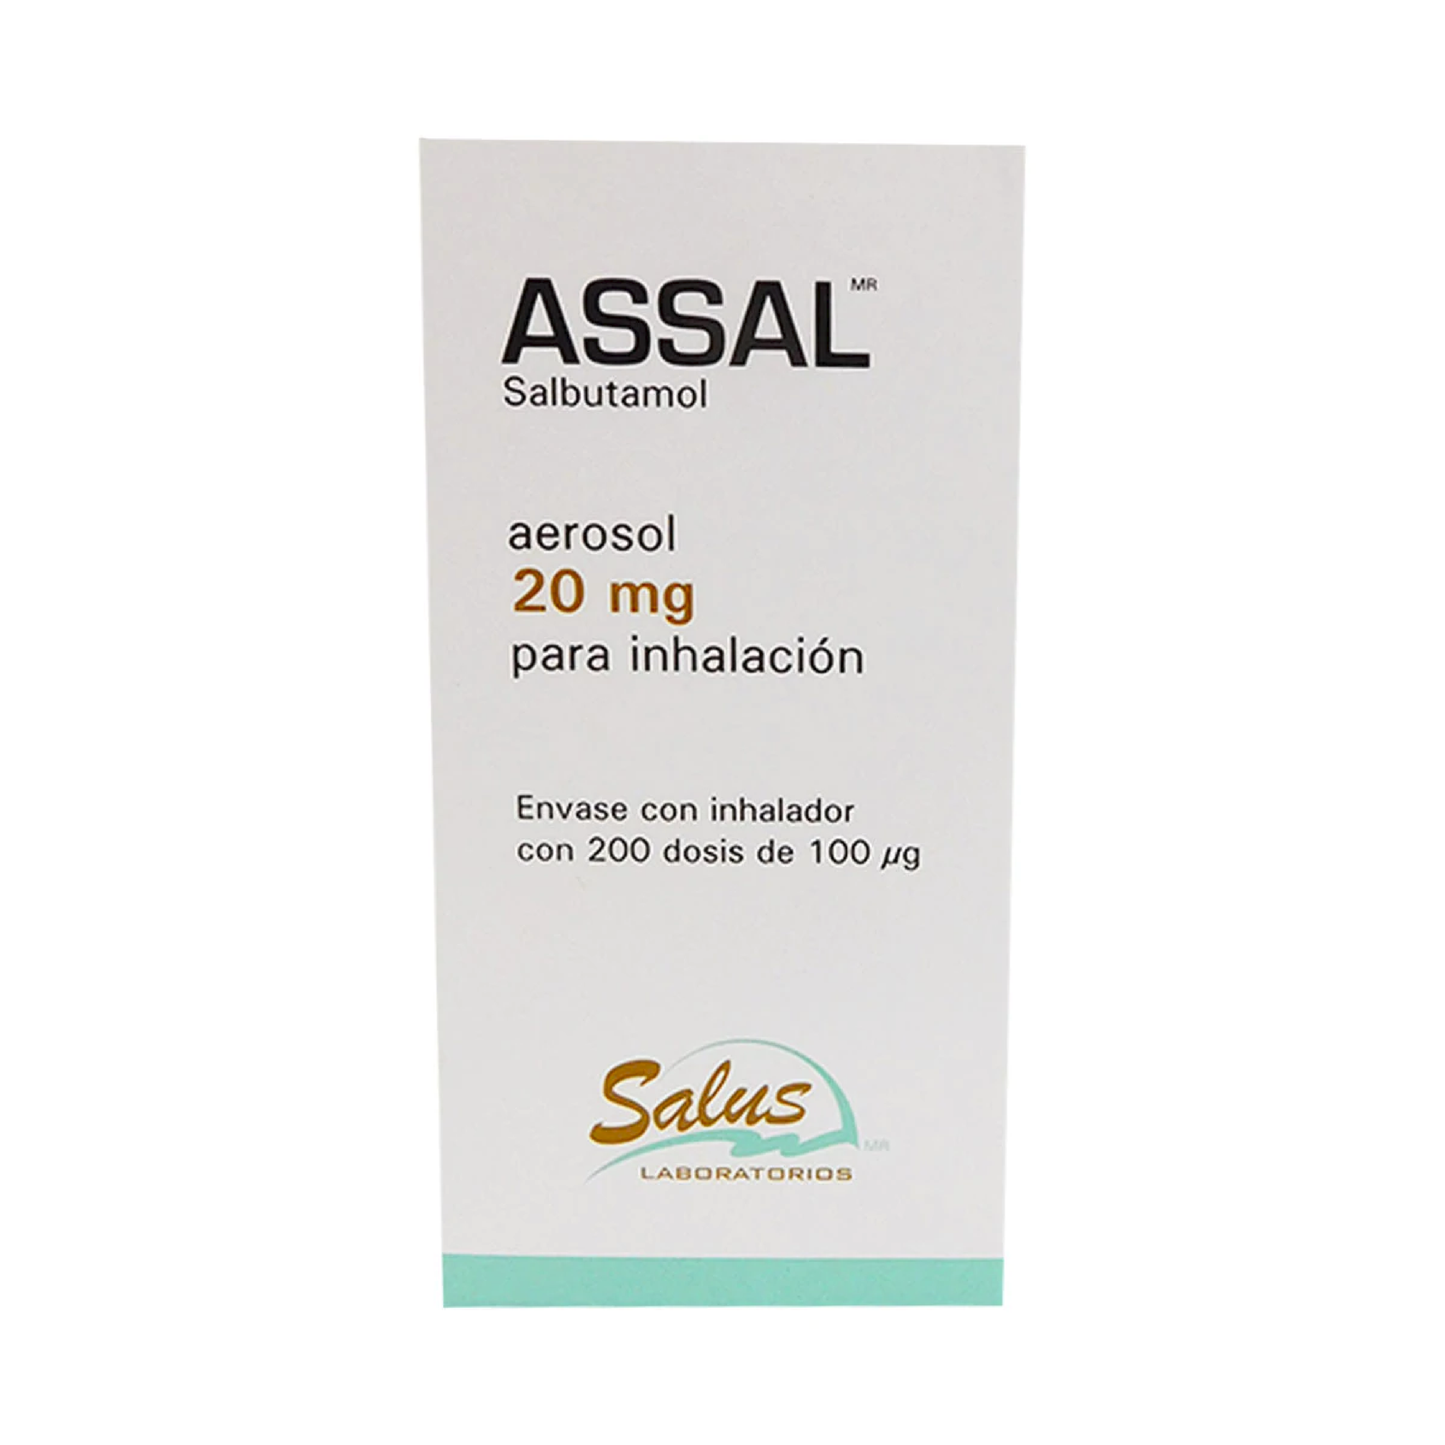 Assal (Salbutamol) 20mg